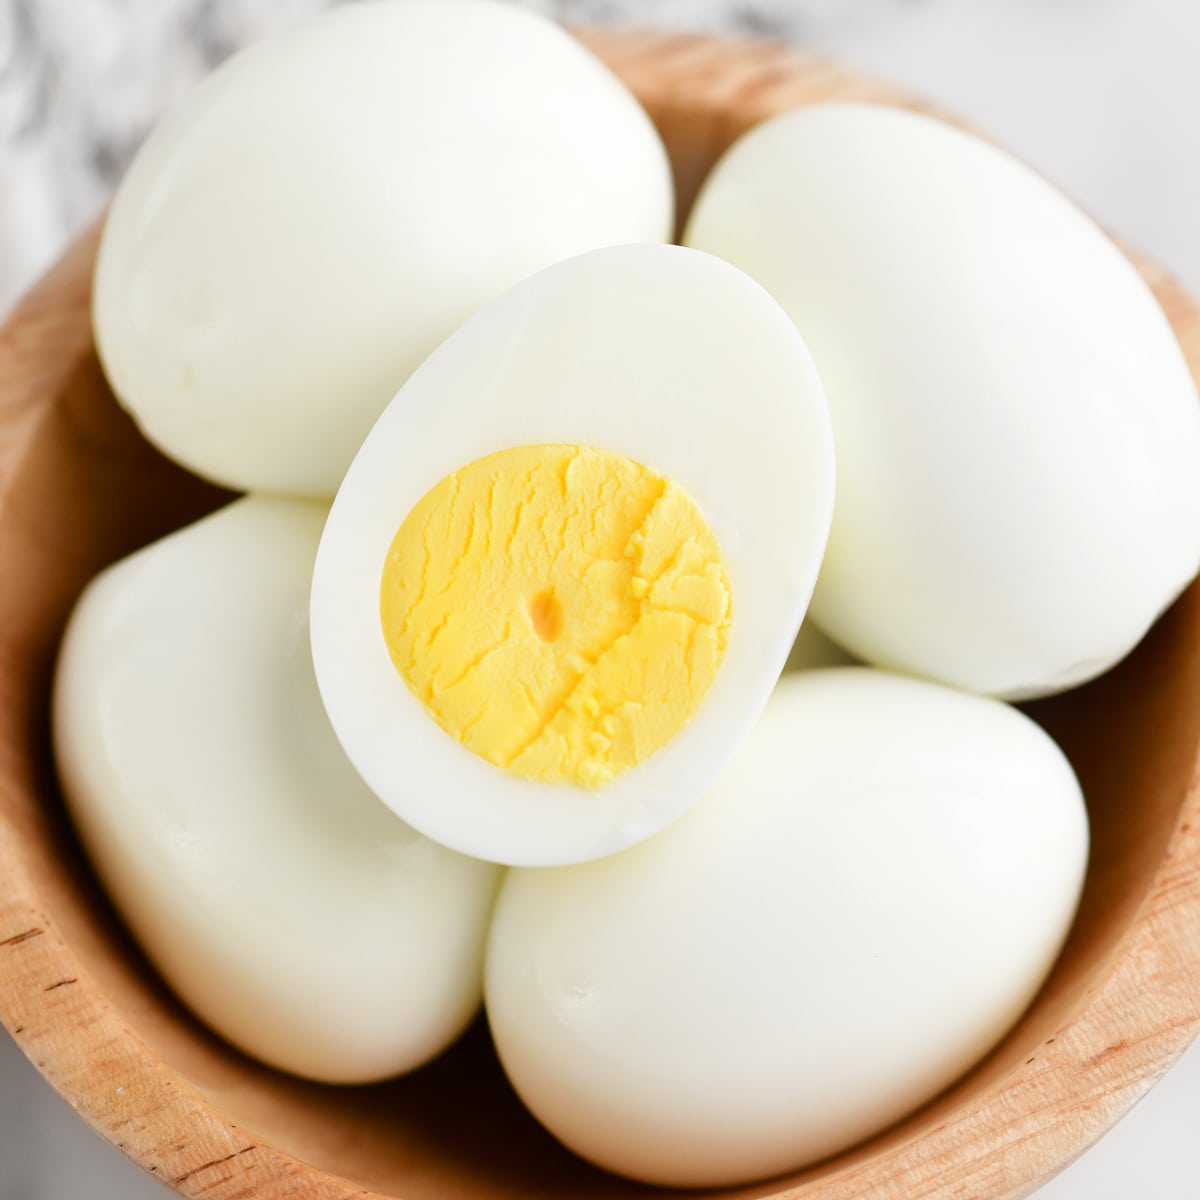 https://www.thegunnysack.com/wp-content/uploads/2021/03/How-To-Boil-Eggs.jpg